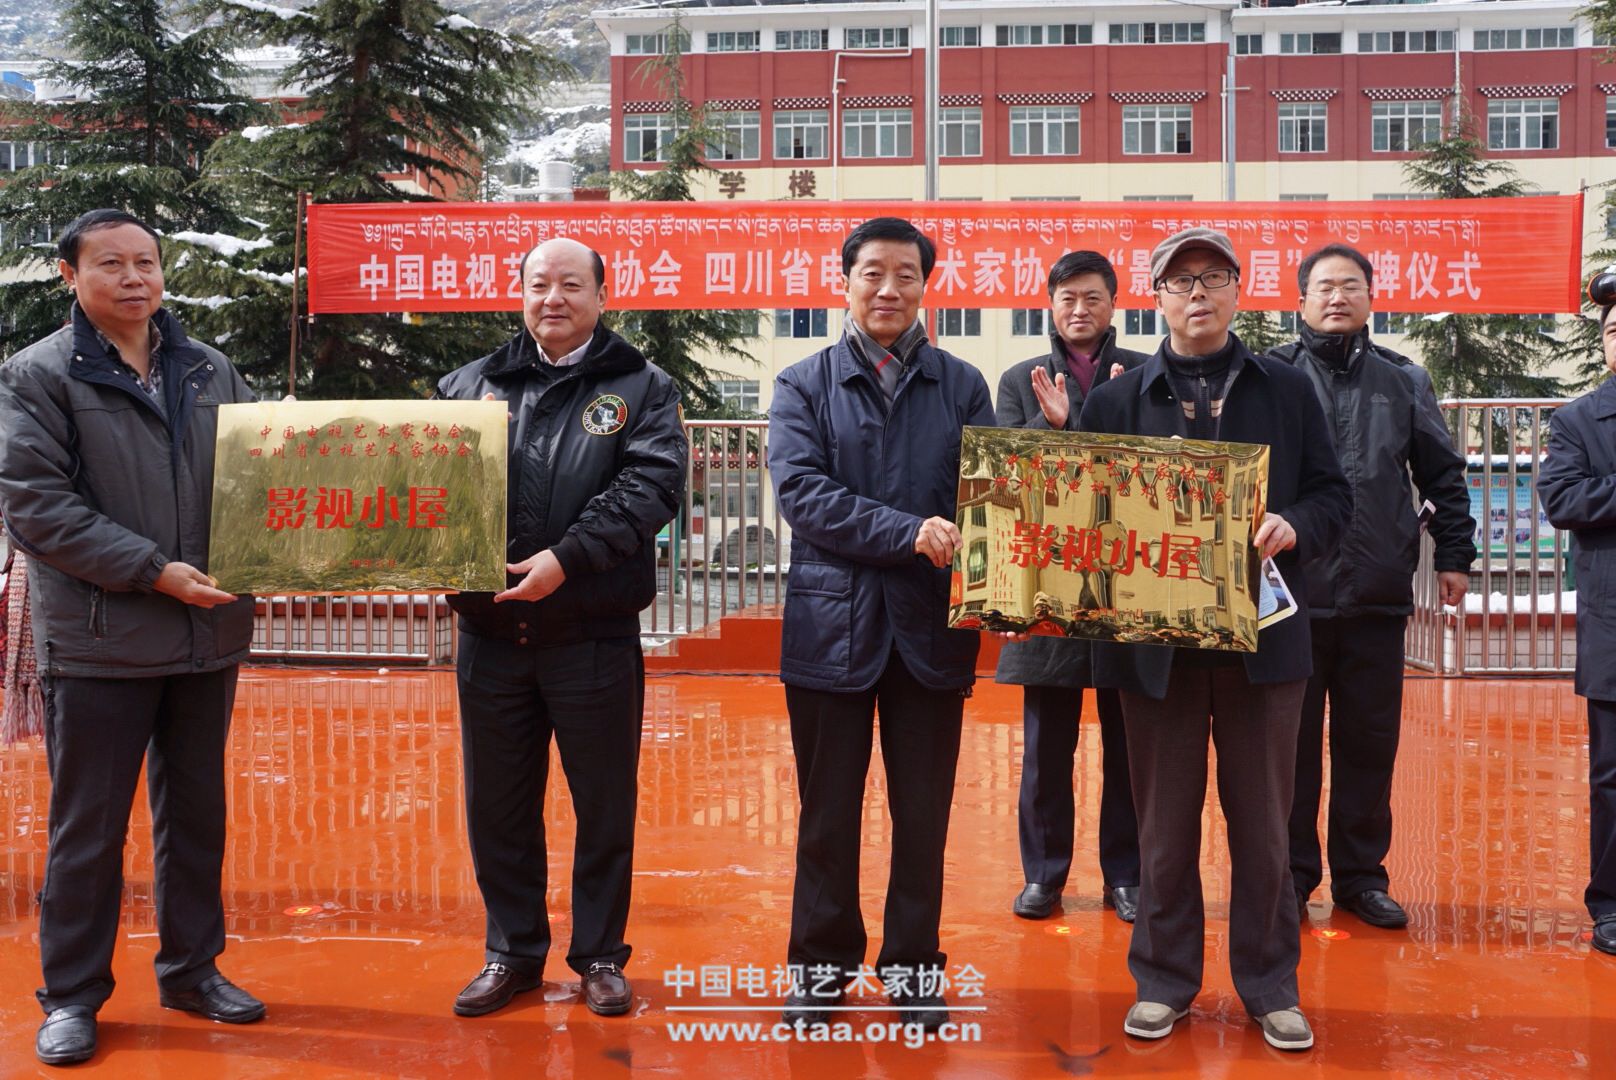 中国视协 四川省视协于藏区再创建“影视小屋”